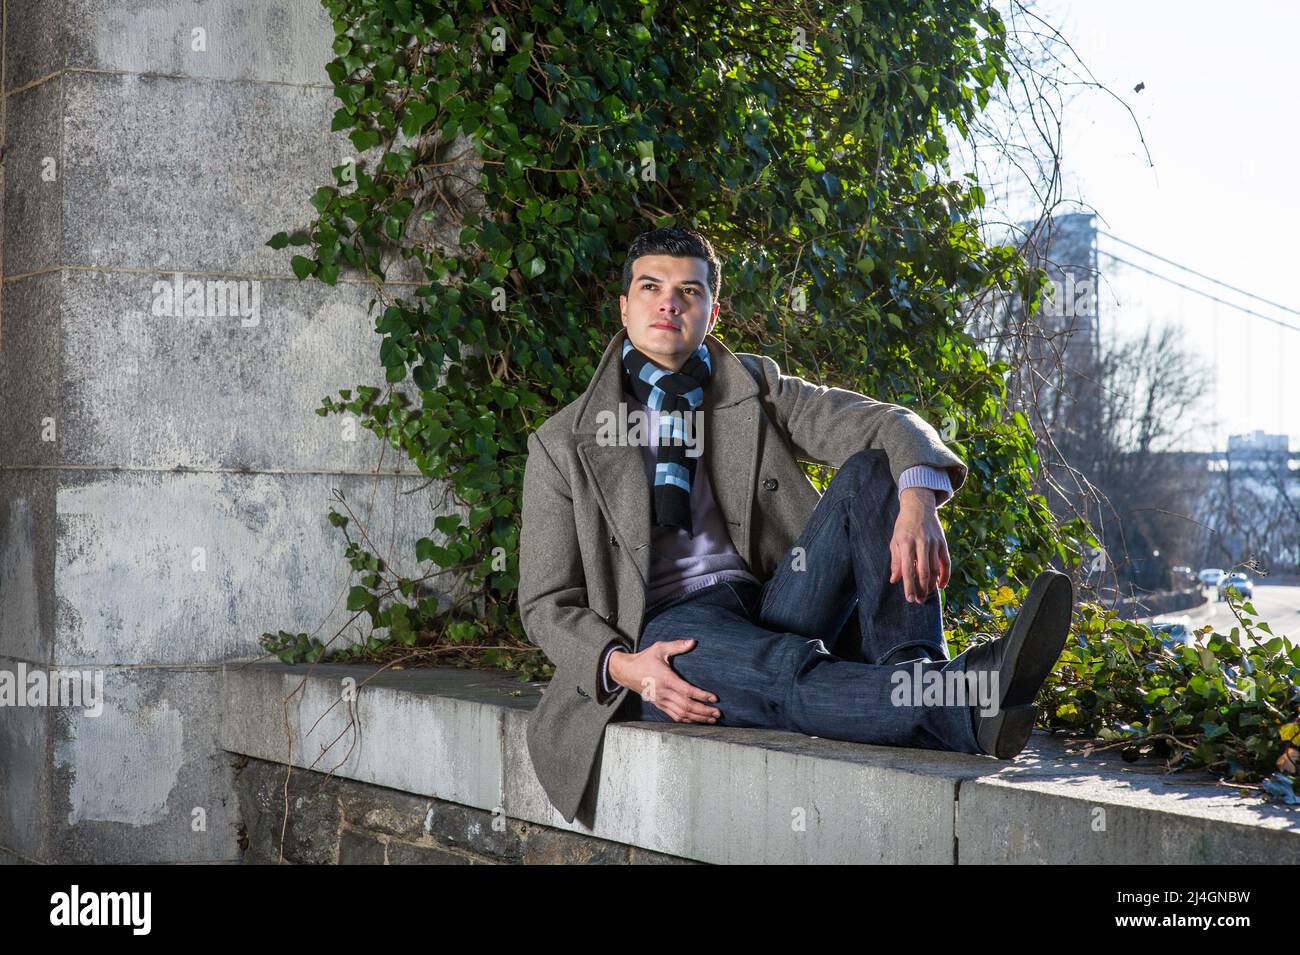 Ein junger Mann, der auf einem großen Rahmen sitzt und vor wilden grünen Pflanzen sitzt, schaut nach oben und denkt tief nach. Stockfoto